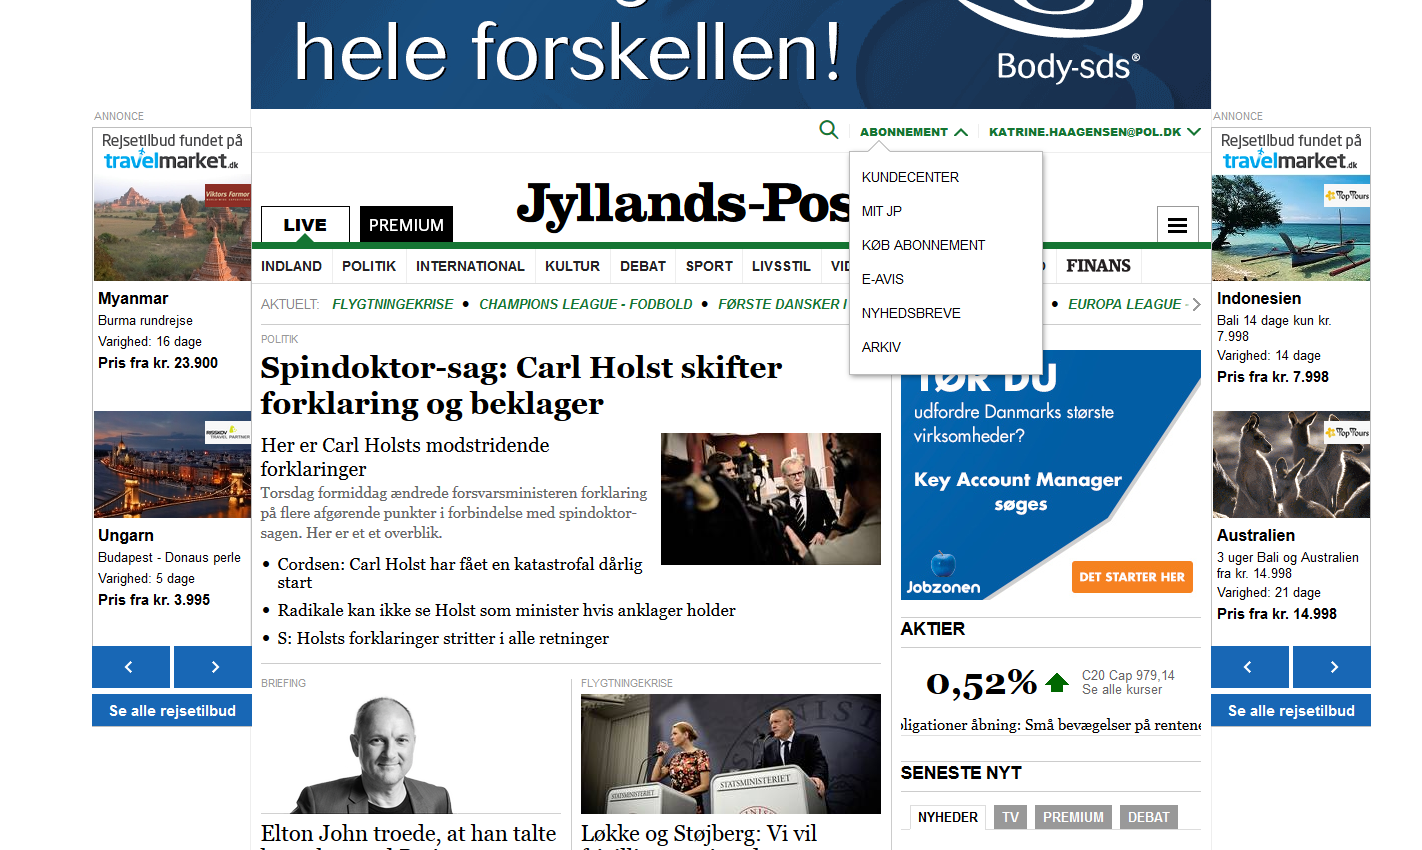 Jyllands-Postens e-avis og Premium Kontakt Jyllands-Posten Telefon: 87 8 7 7 kundeservice@jp.dk Skriv jp.dk i din browser. Log ind øverst i højre hjørne med dit Medielogin.